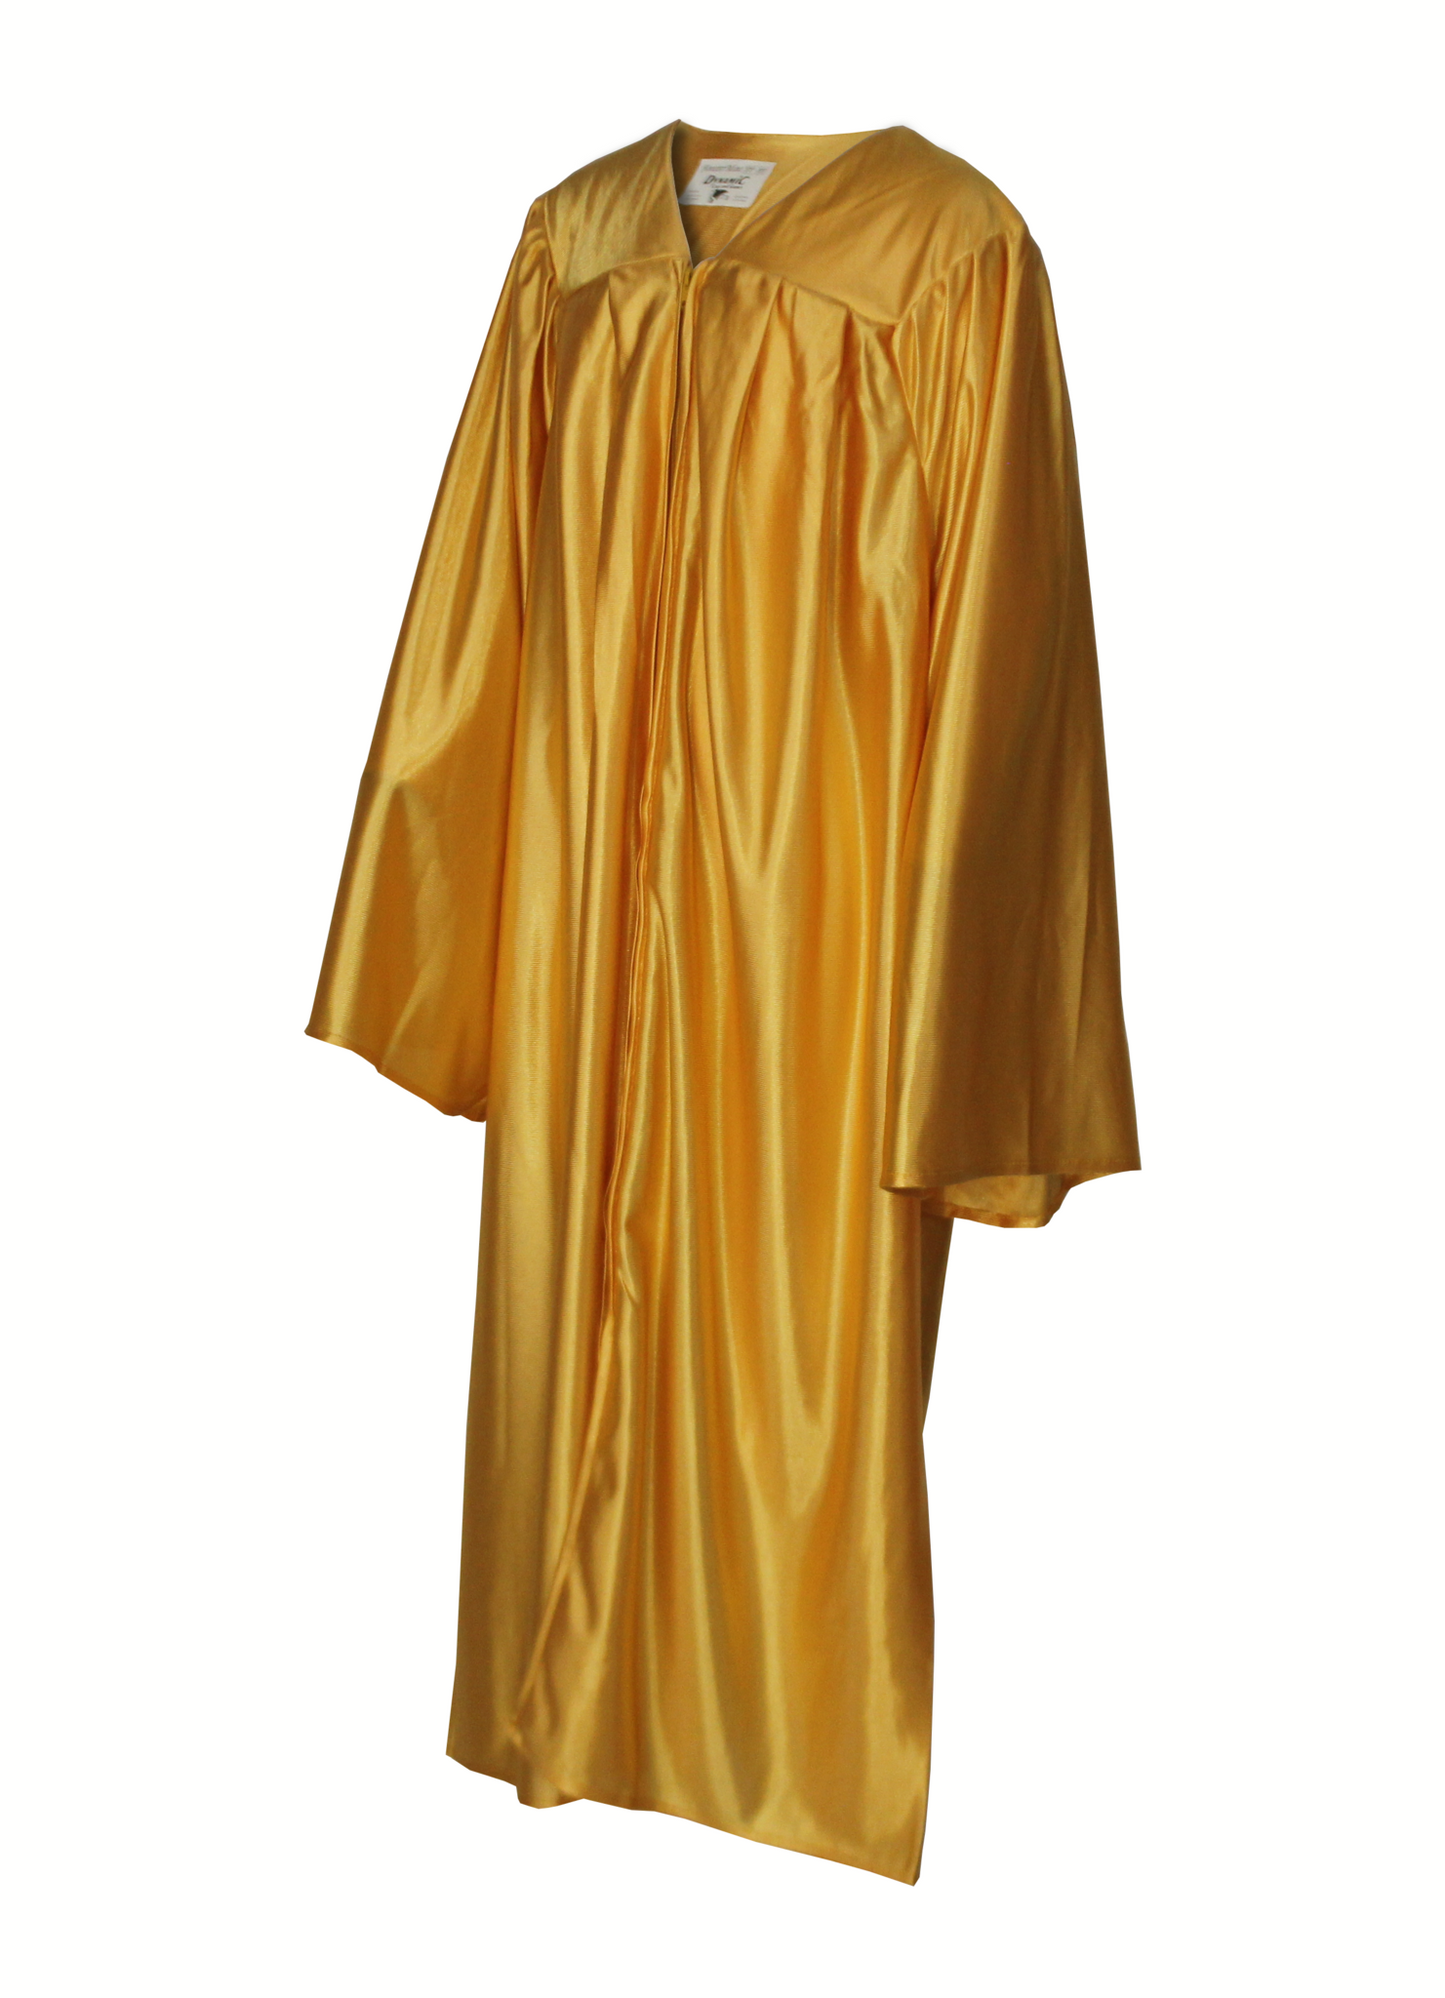 Shiny Antique Gold Graduation Gown